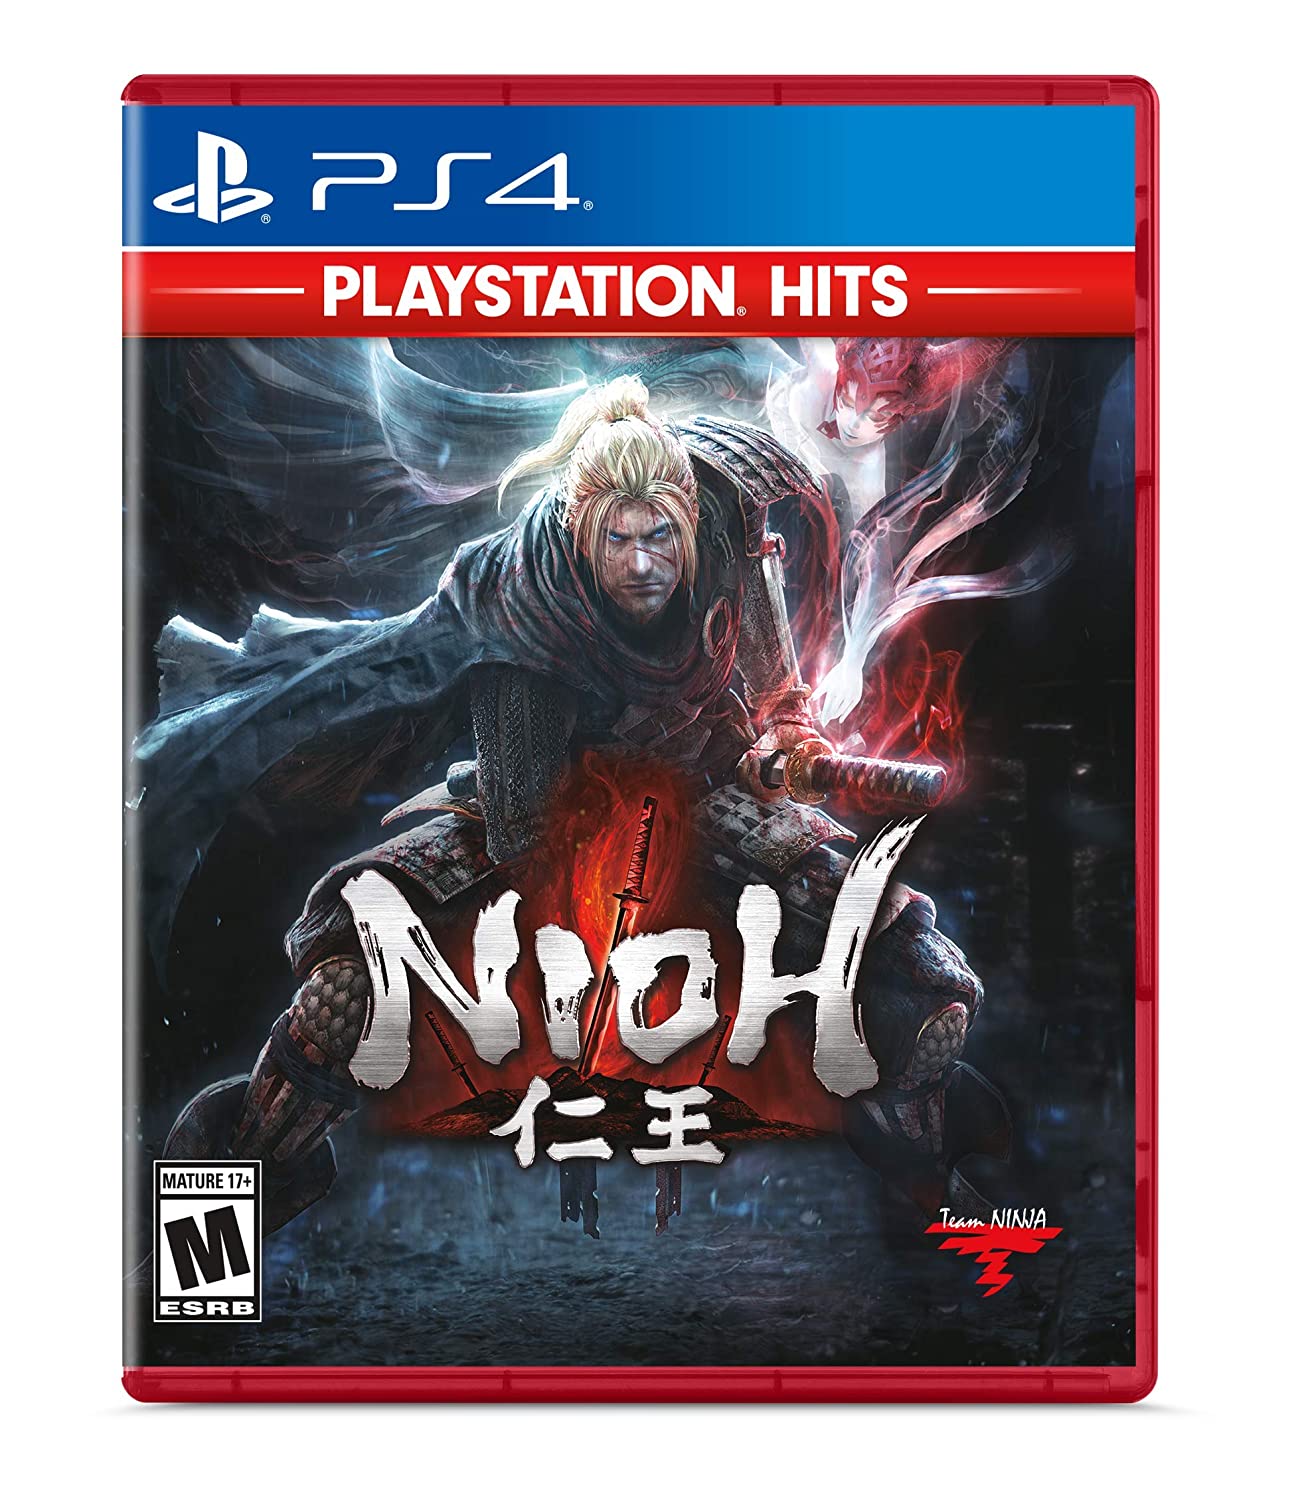 Nioh (Playstation Hits) (Playstation 4)